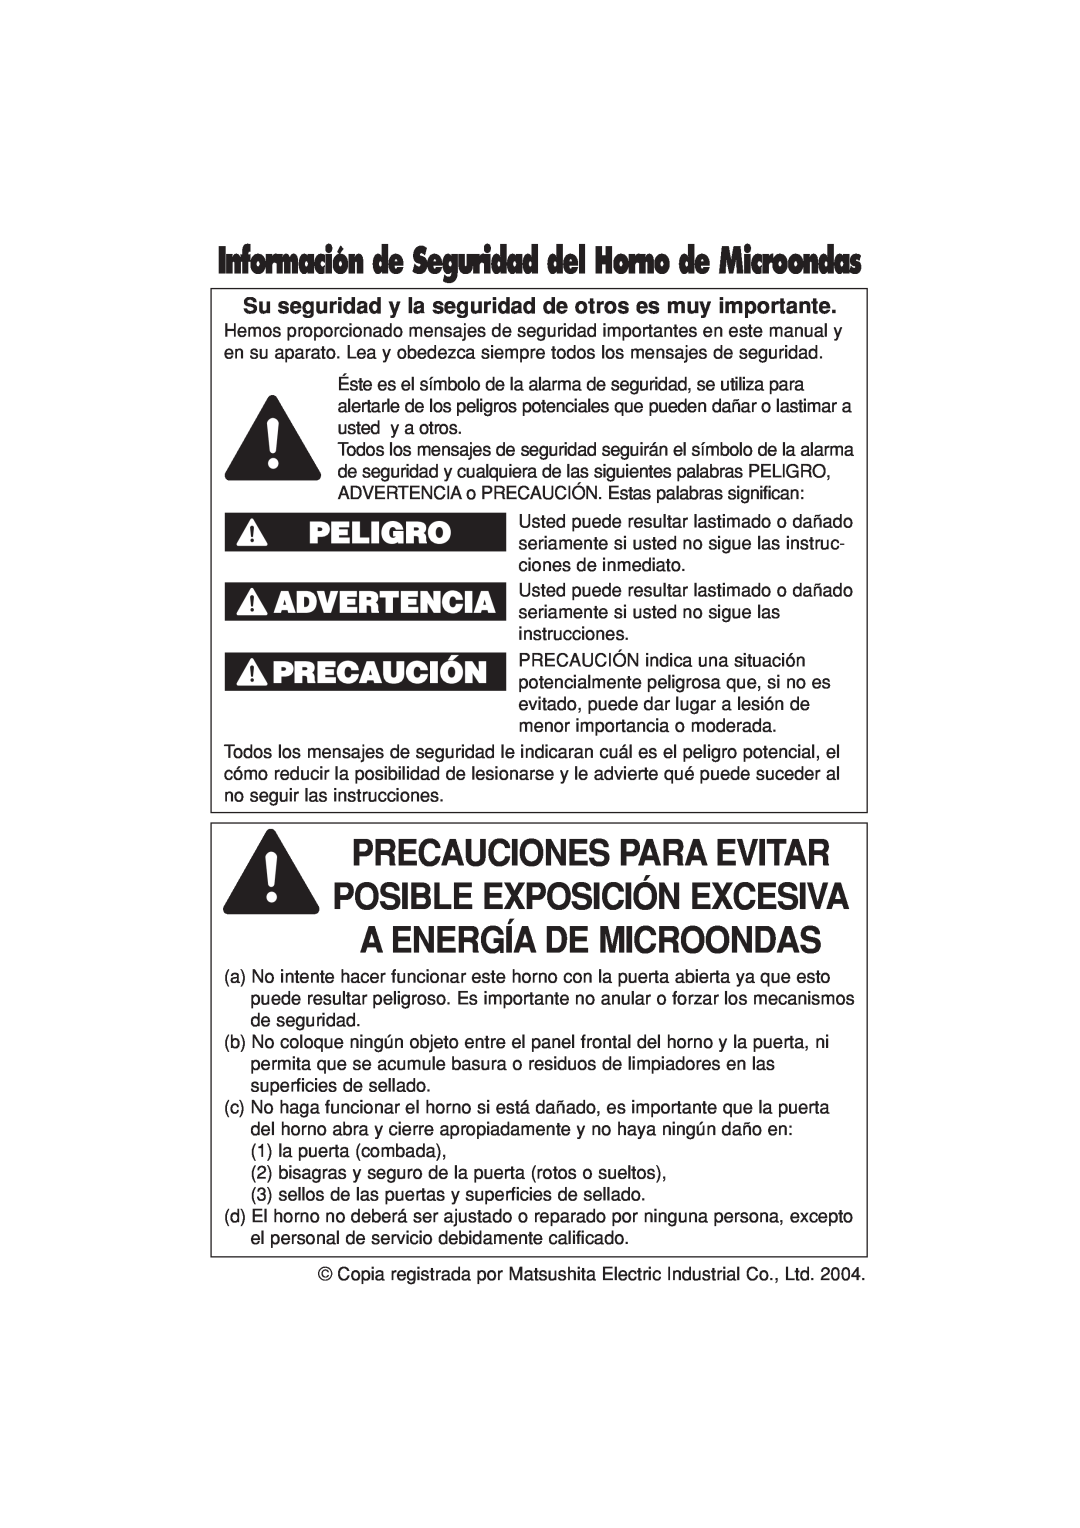 Panasonic NN-H624 operating instructions Peligro Advertencia, Información de Seguridad del Horno de Microondas 